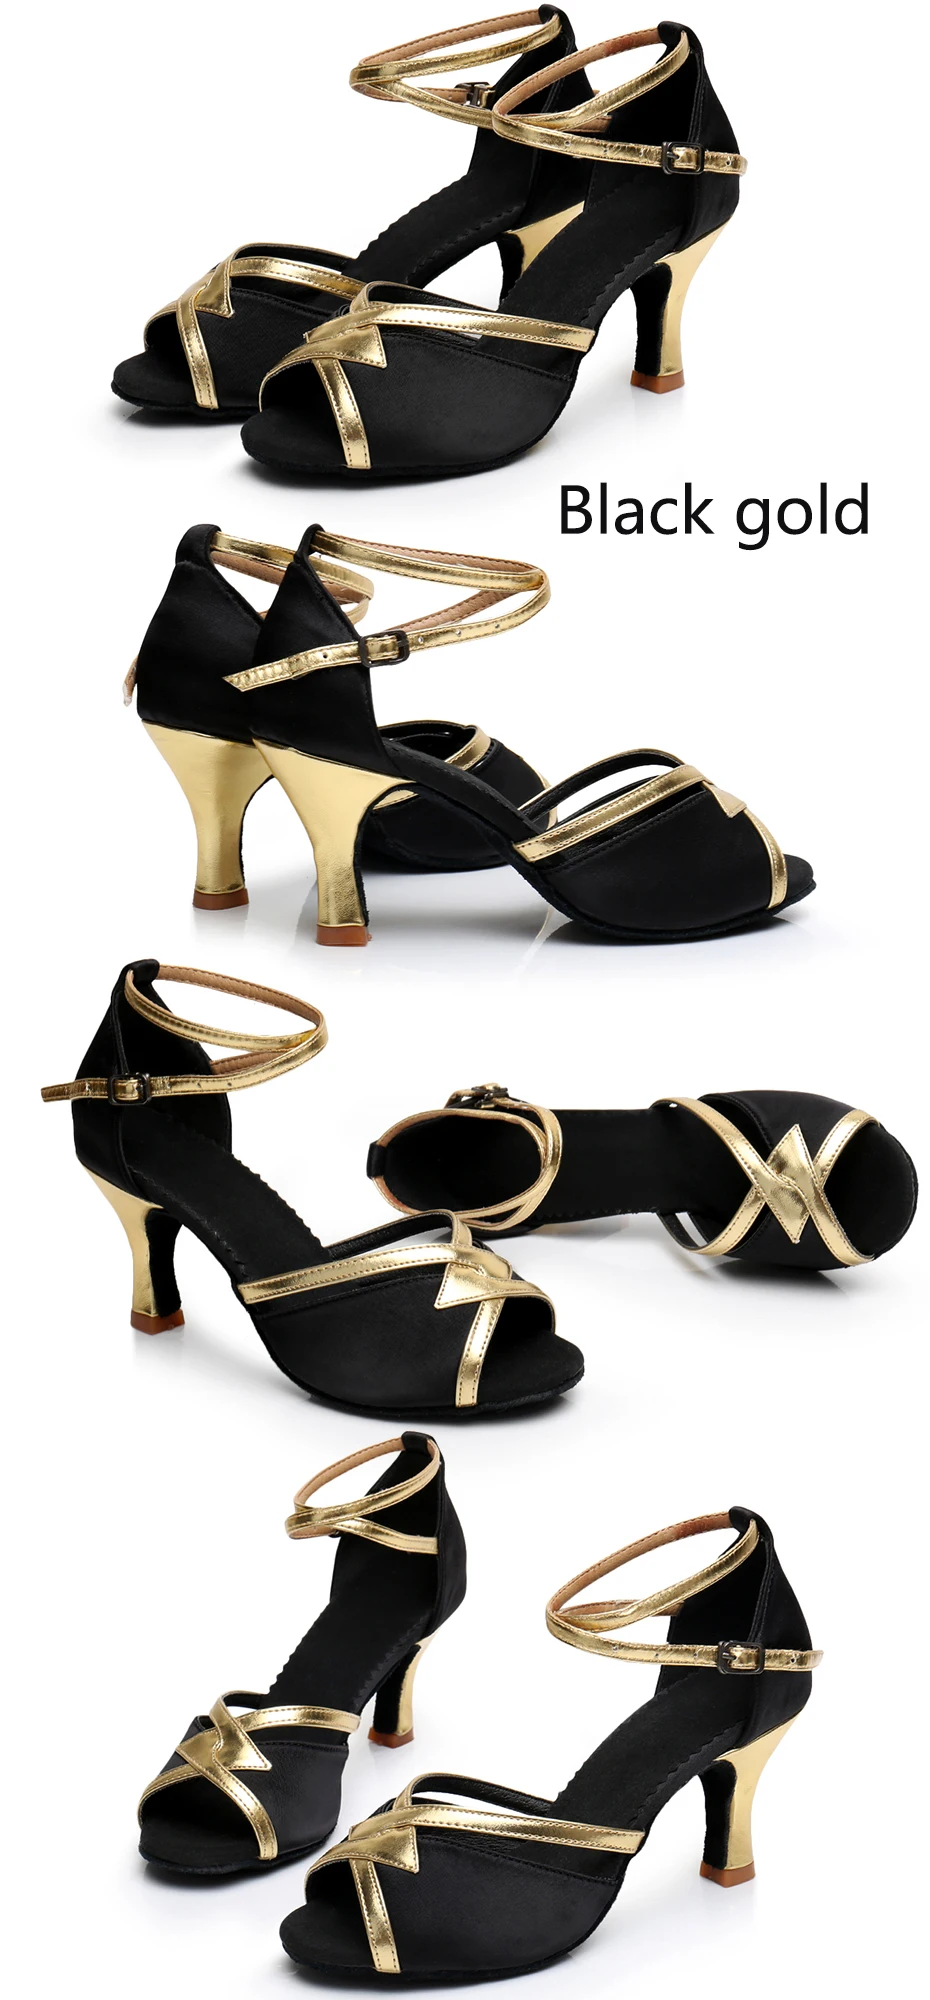 Alharbi танцевальная обувь танго латинские танцевальные туфли для девушек женщин Дамы 504